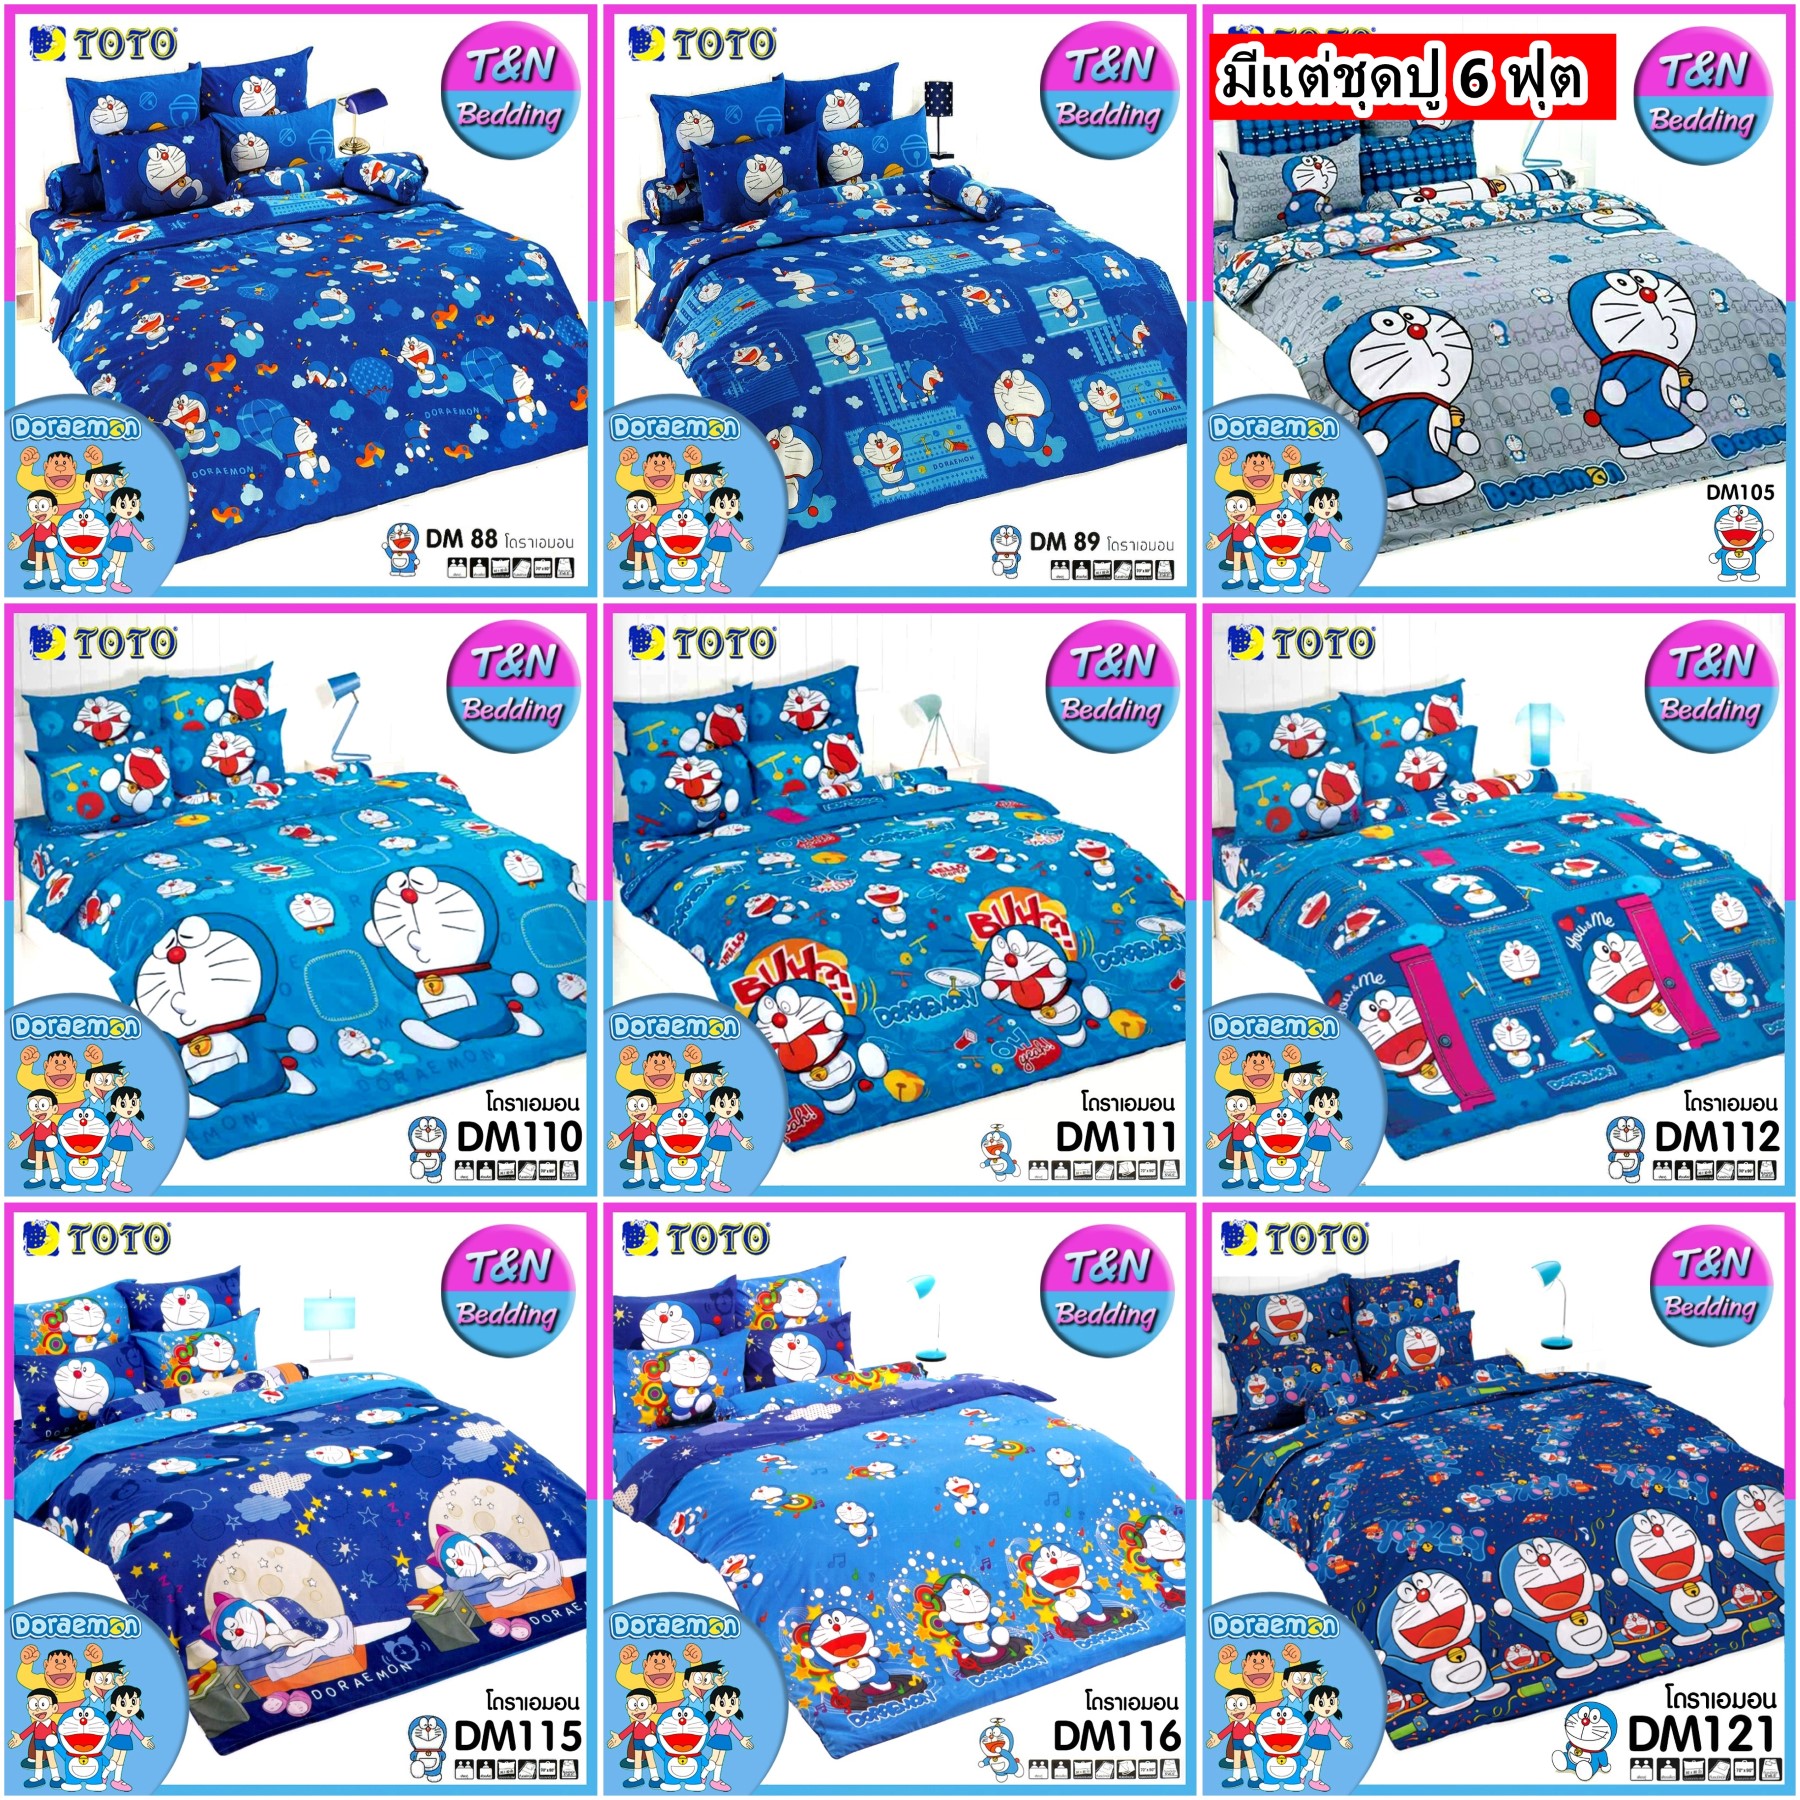 TOTO ชุดผ้าปู+ผ้านวม ขนาด 3.5 / 5 / 6 ฟุต โดเรม่อน Doraemon #DM2562A DM88 DM89  DM105